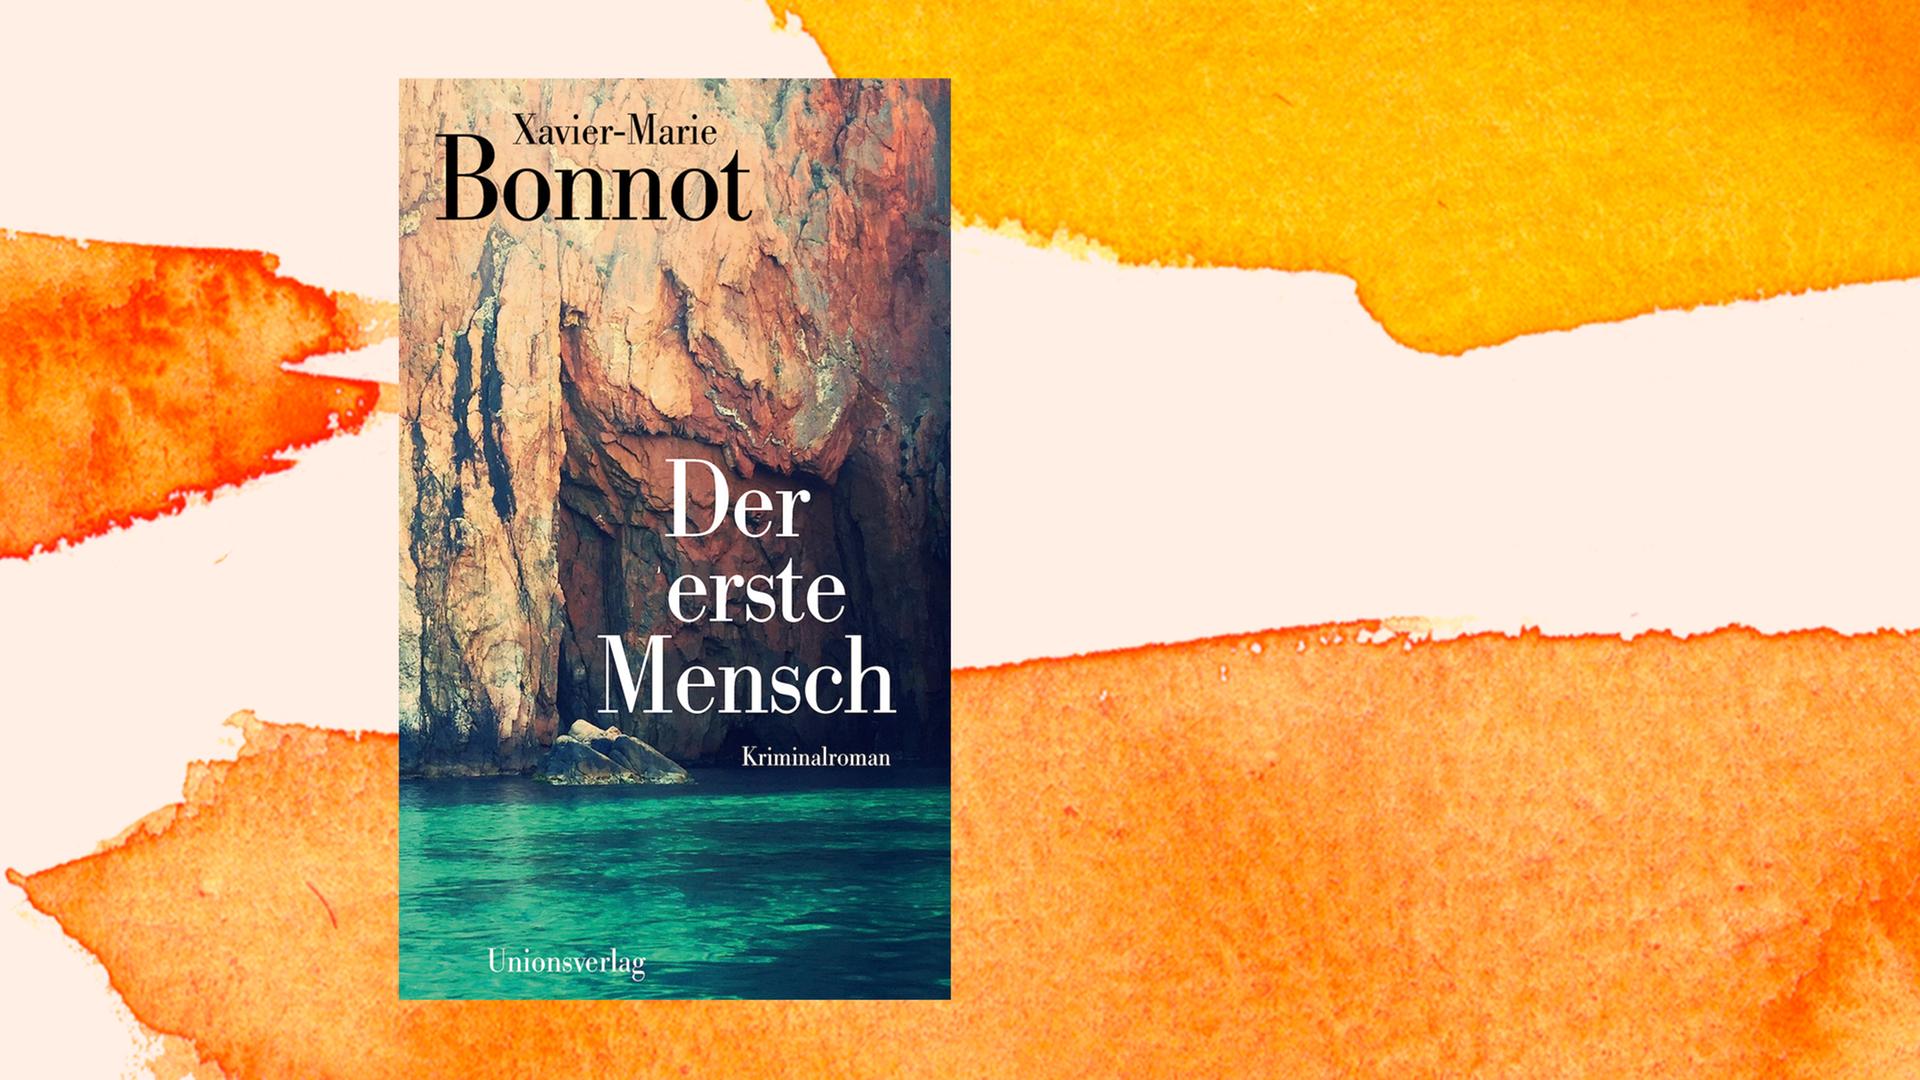 Zu sehen ist das Cover des Buchs "Der erste Mensch" von Xavier-Marie Bonnot vor einem grafischen Hintergrund.